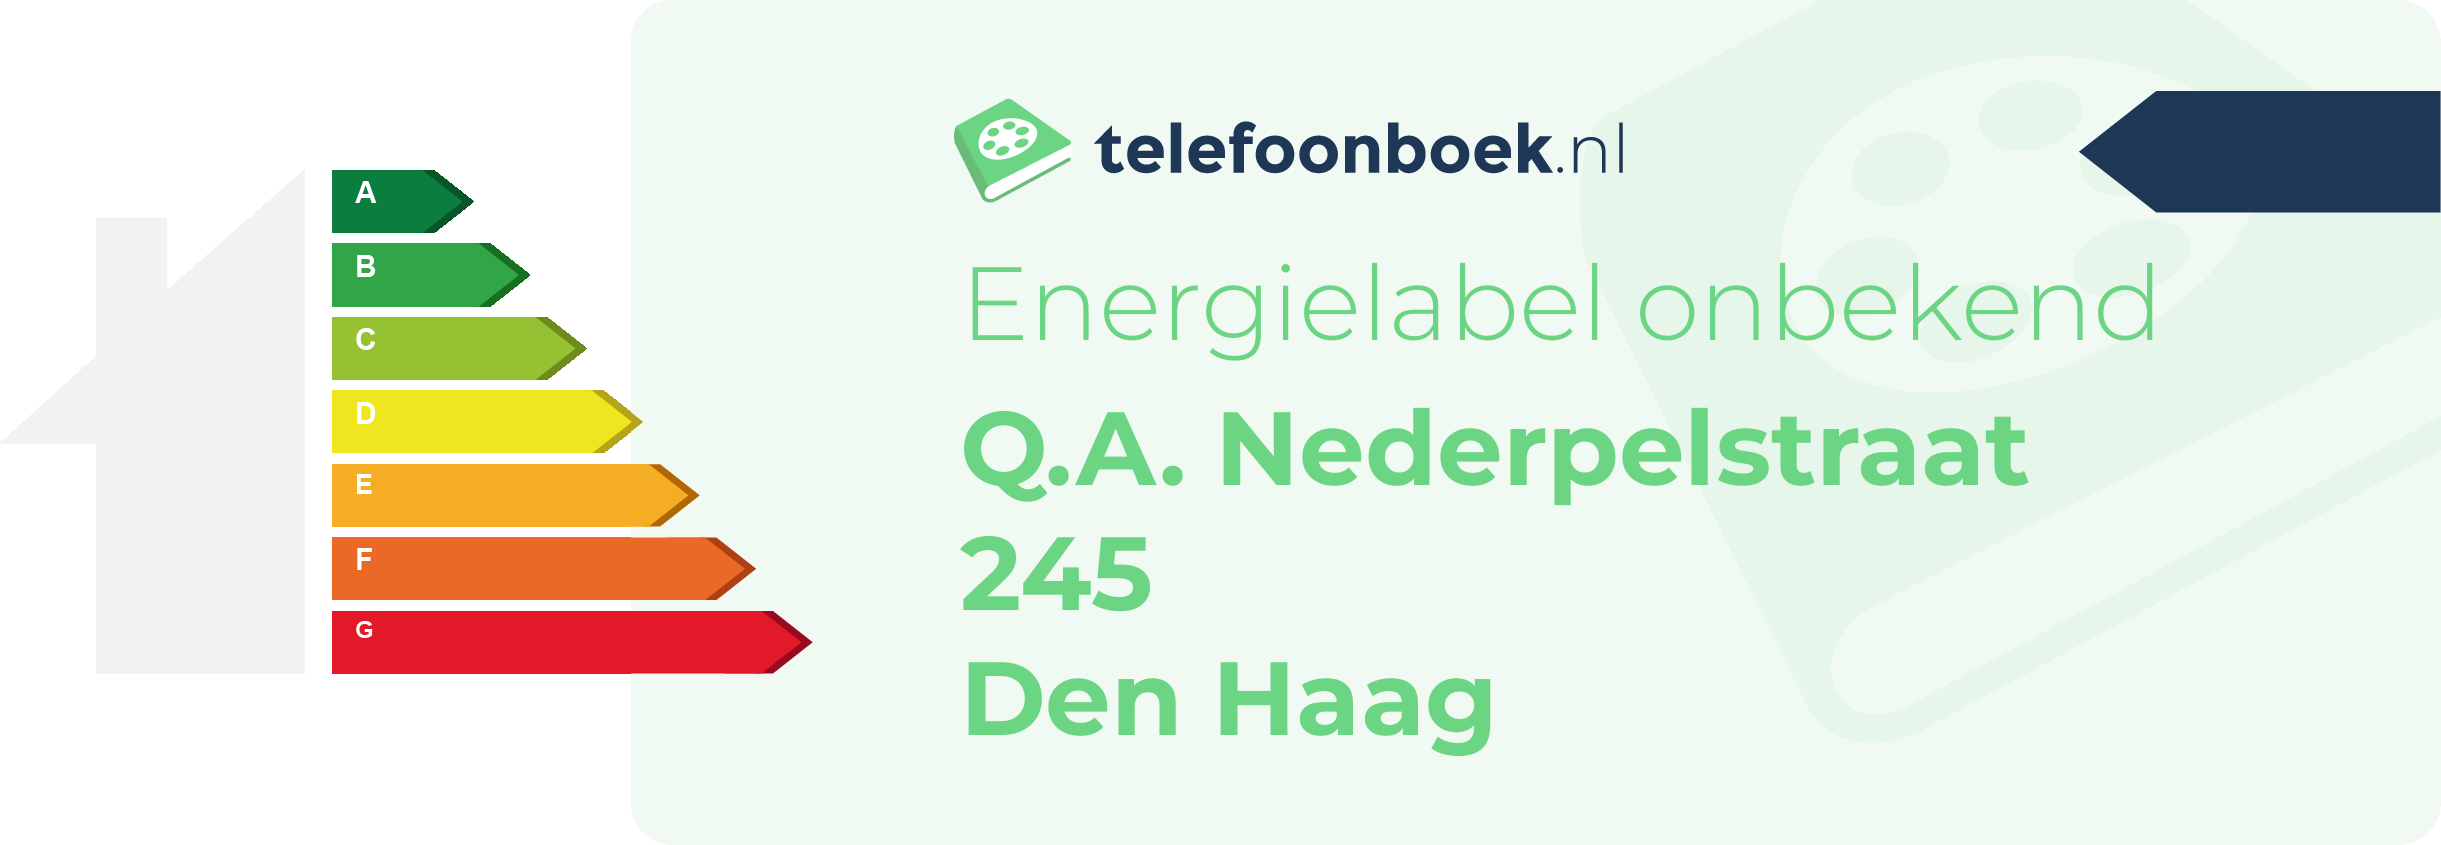 Energielabel Q.A. Nederpelstraat 245 Den Haag